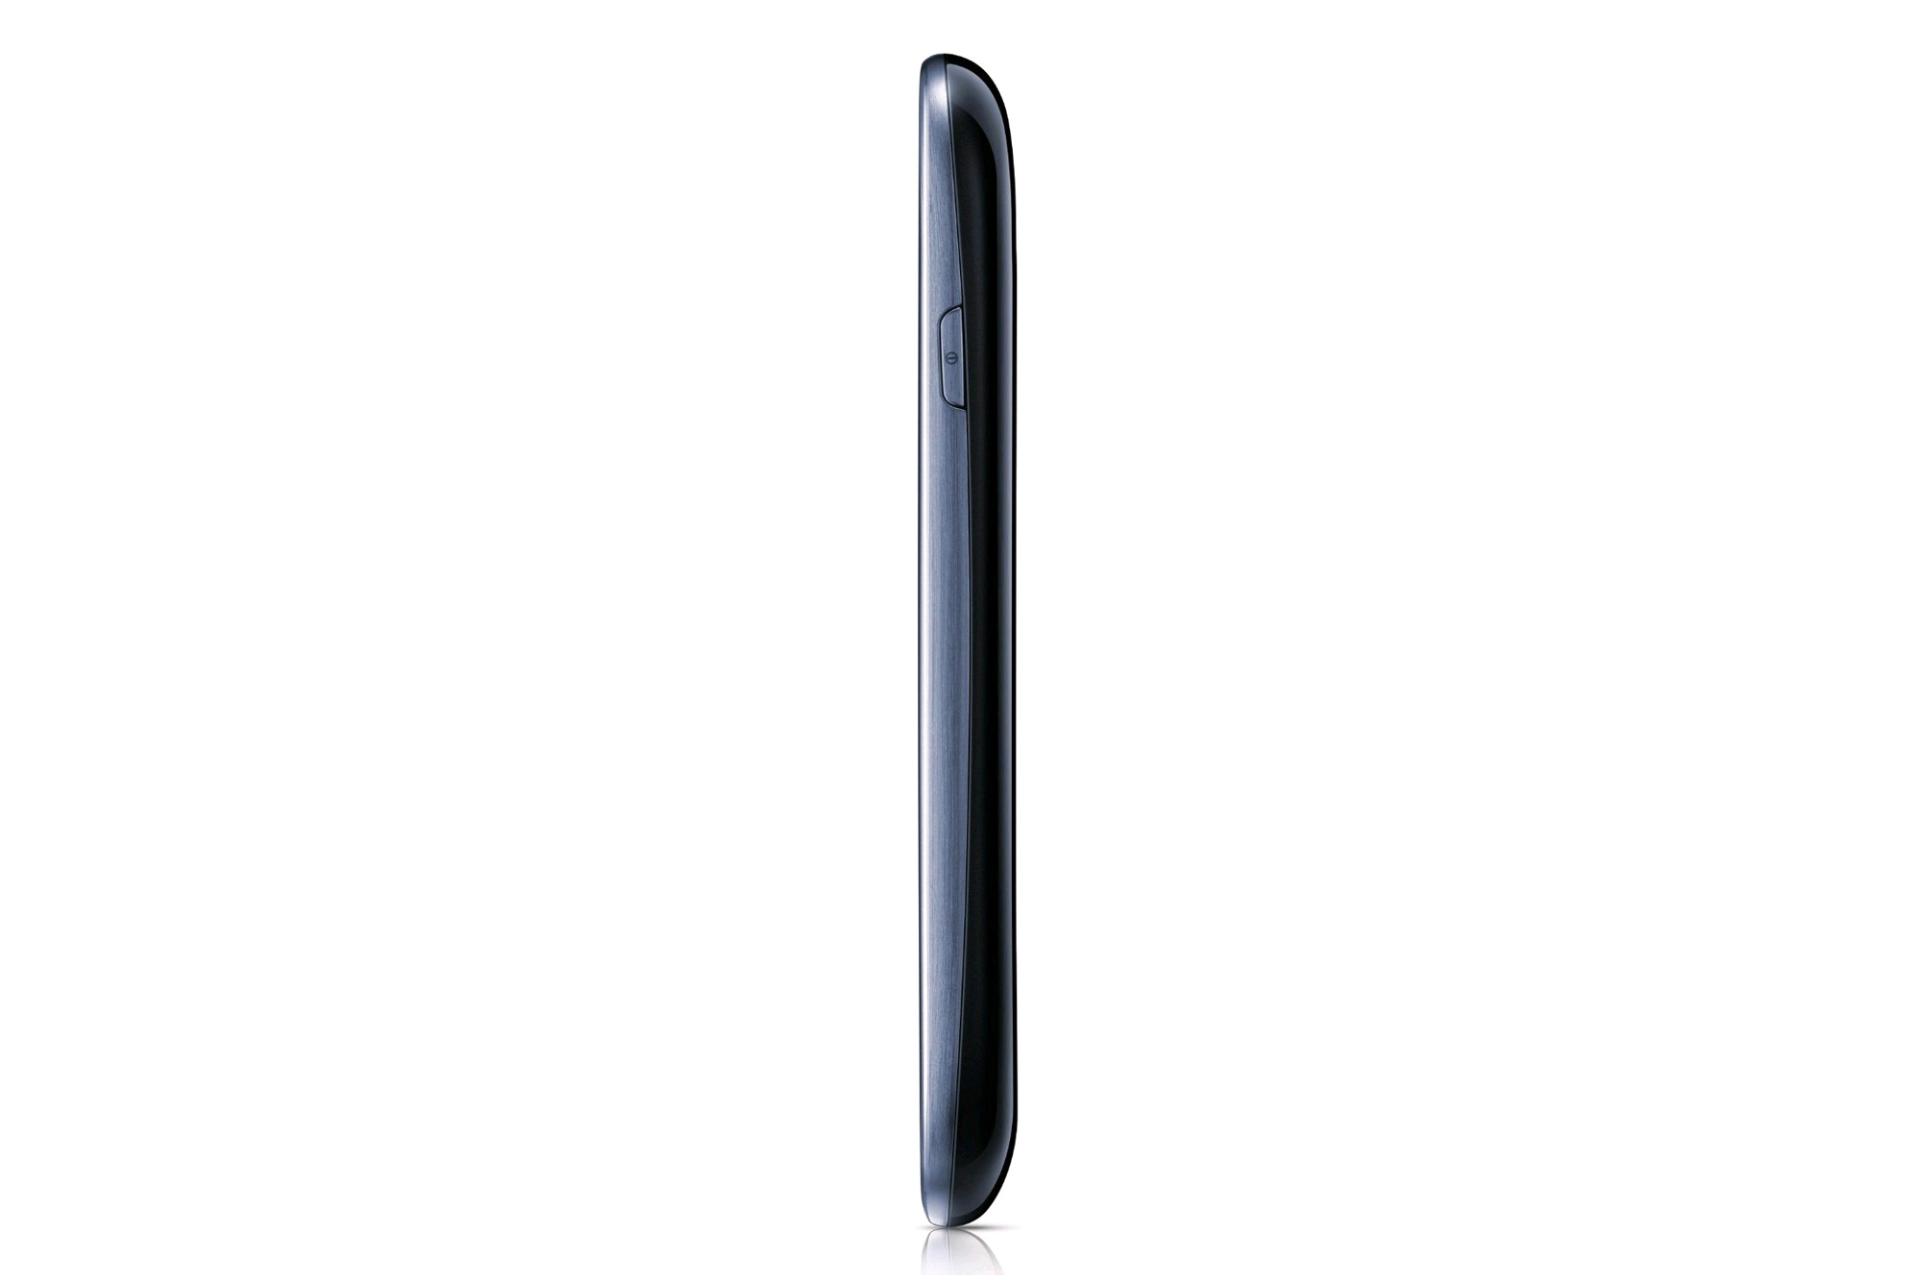 نمای کناری از گلکسی اس 3 مینی سامسونگ Samsung I8190 Galaxy S III mini